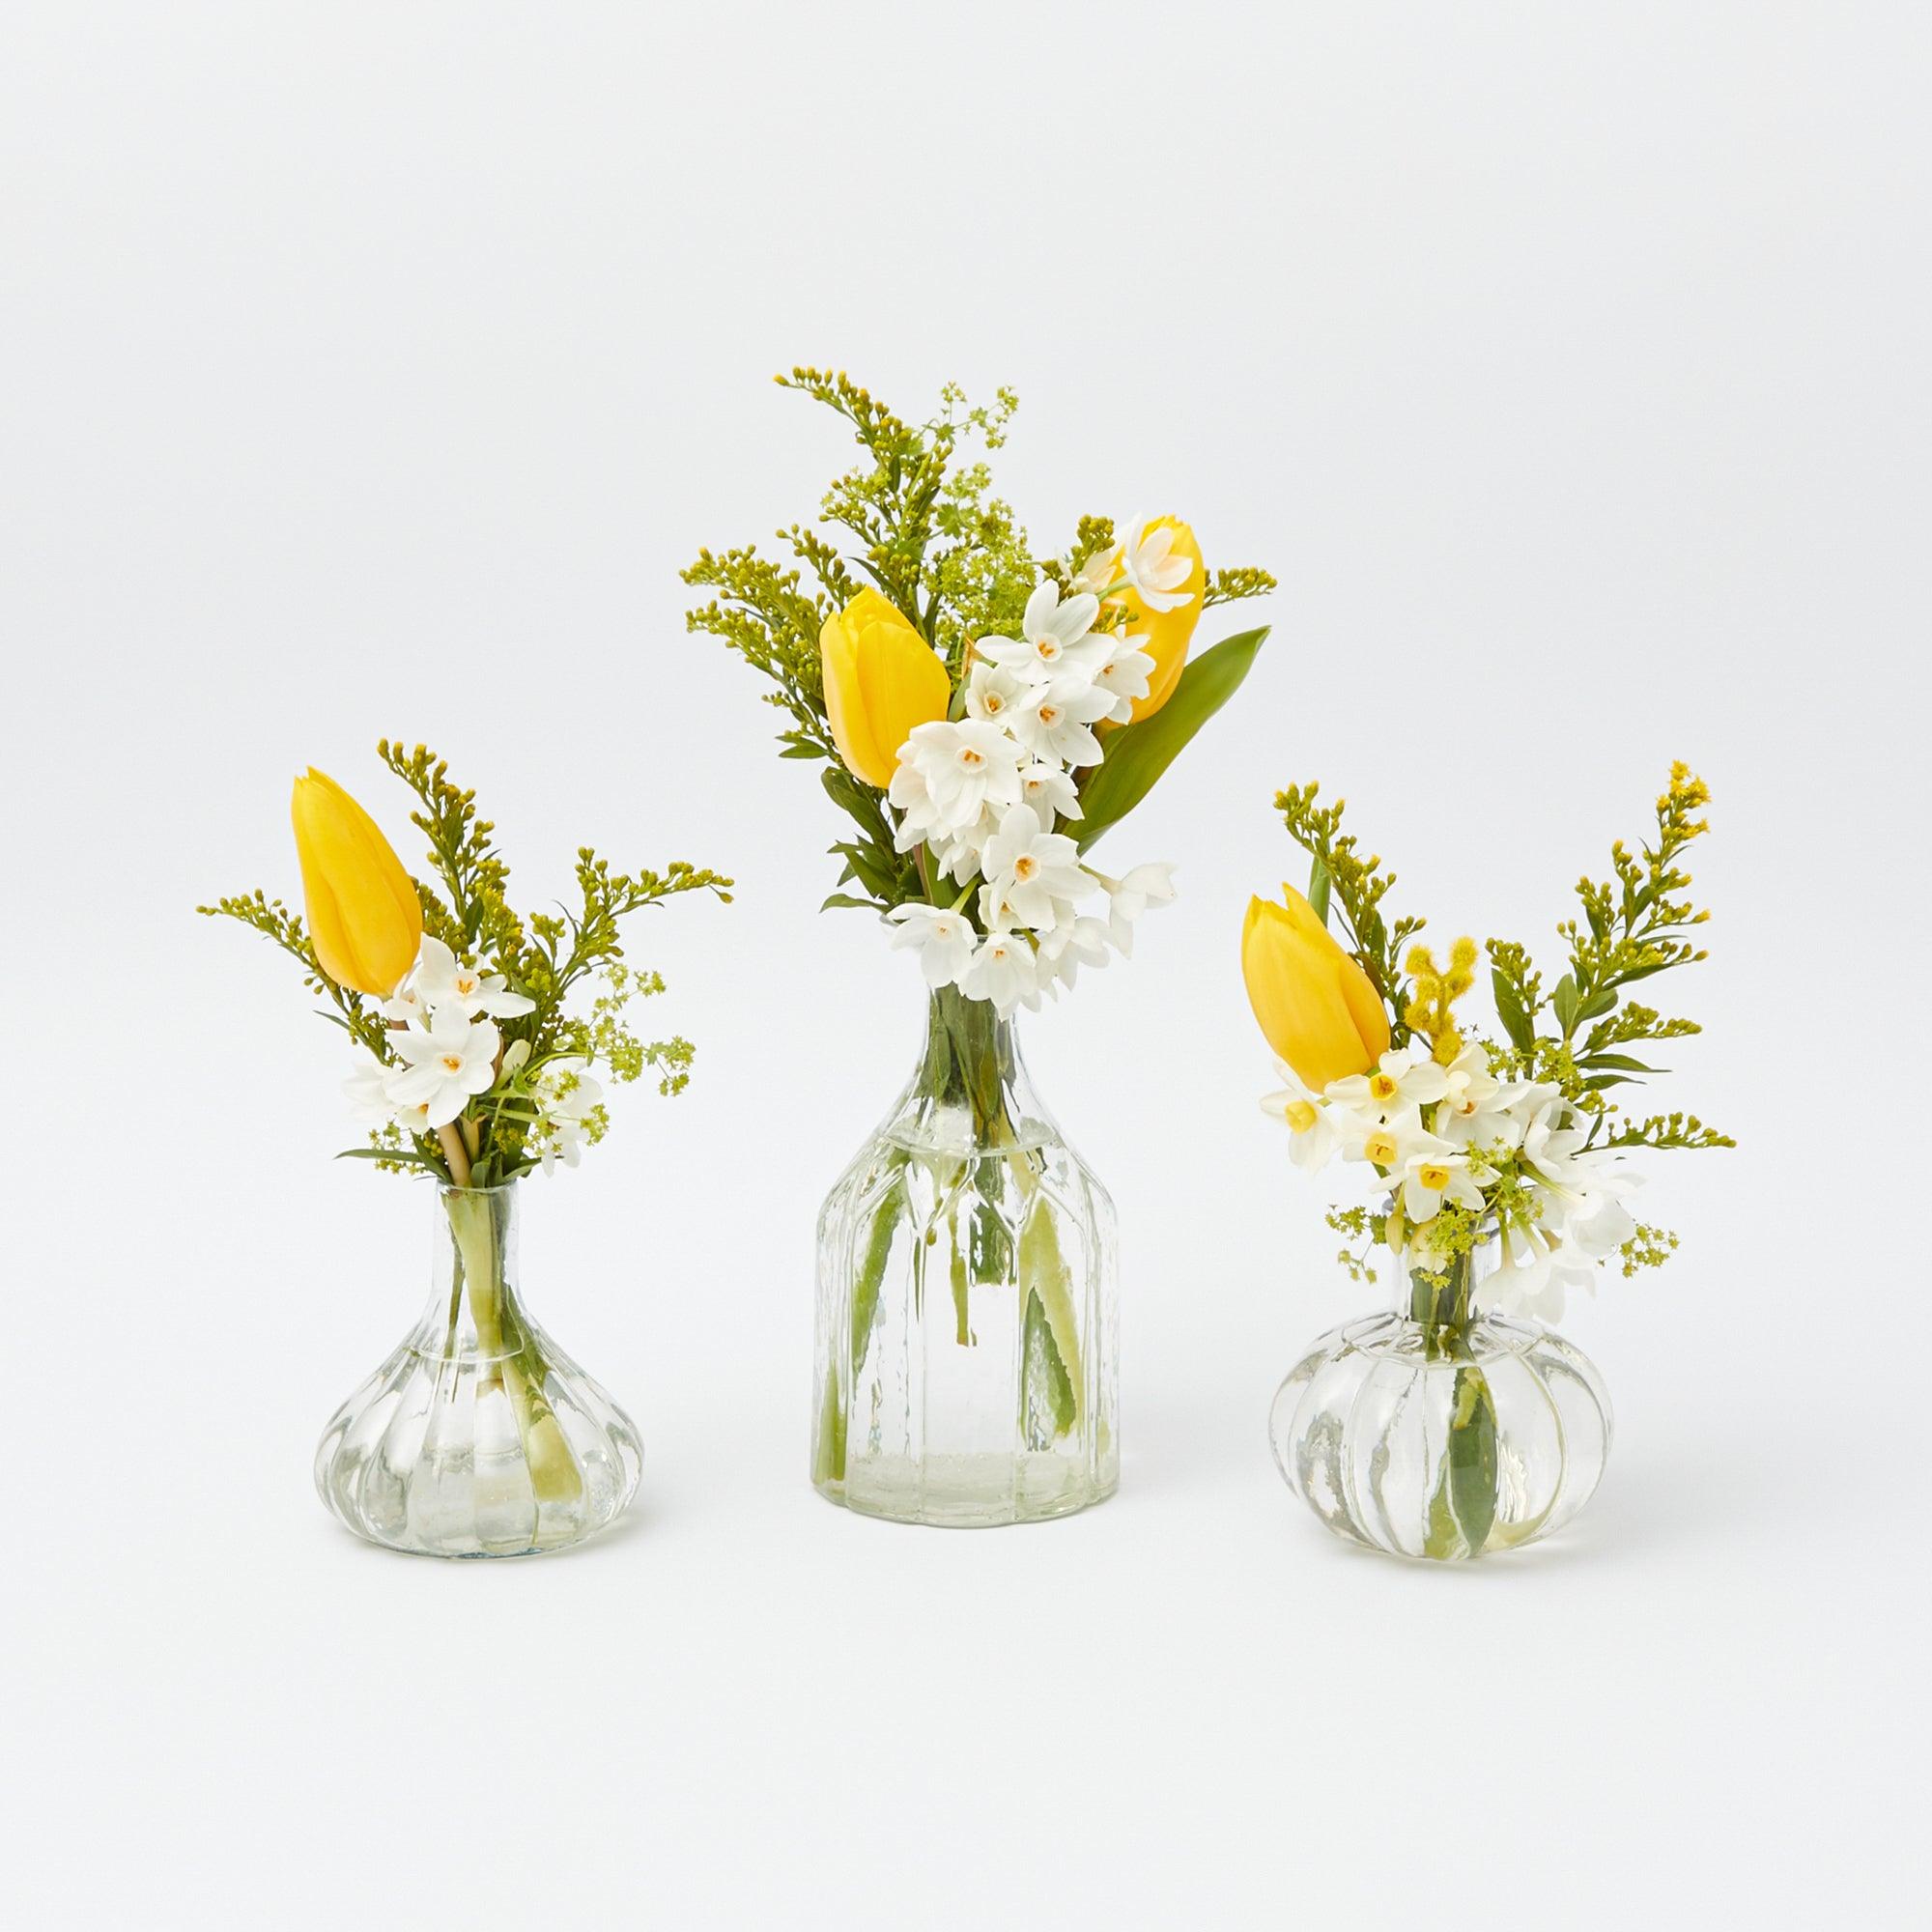 http://www.mrsalice.com/cdn/shop/files/romance-bud-vase-set-of-3-mrs-alice-1.jpg?v=1706793764